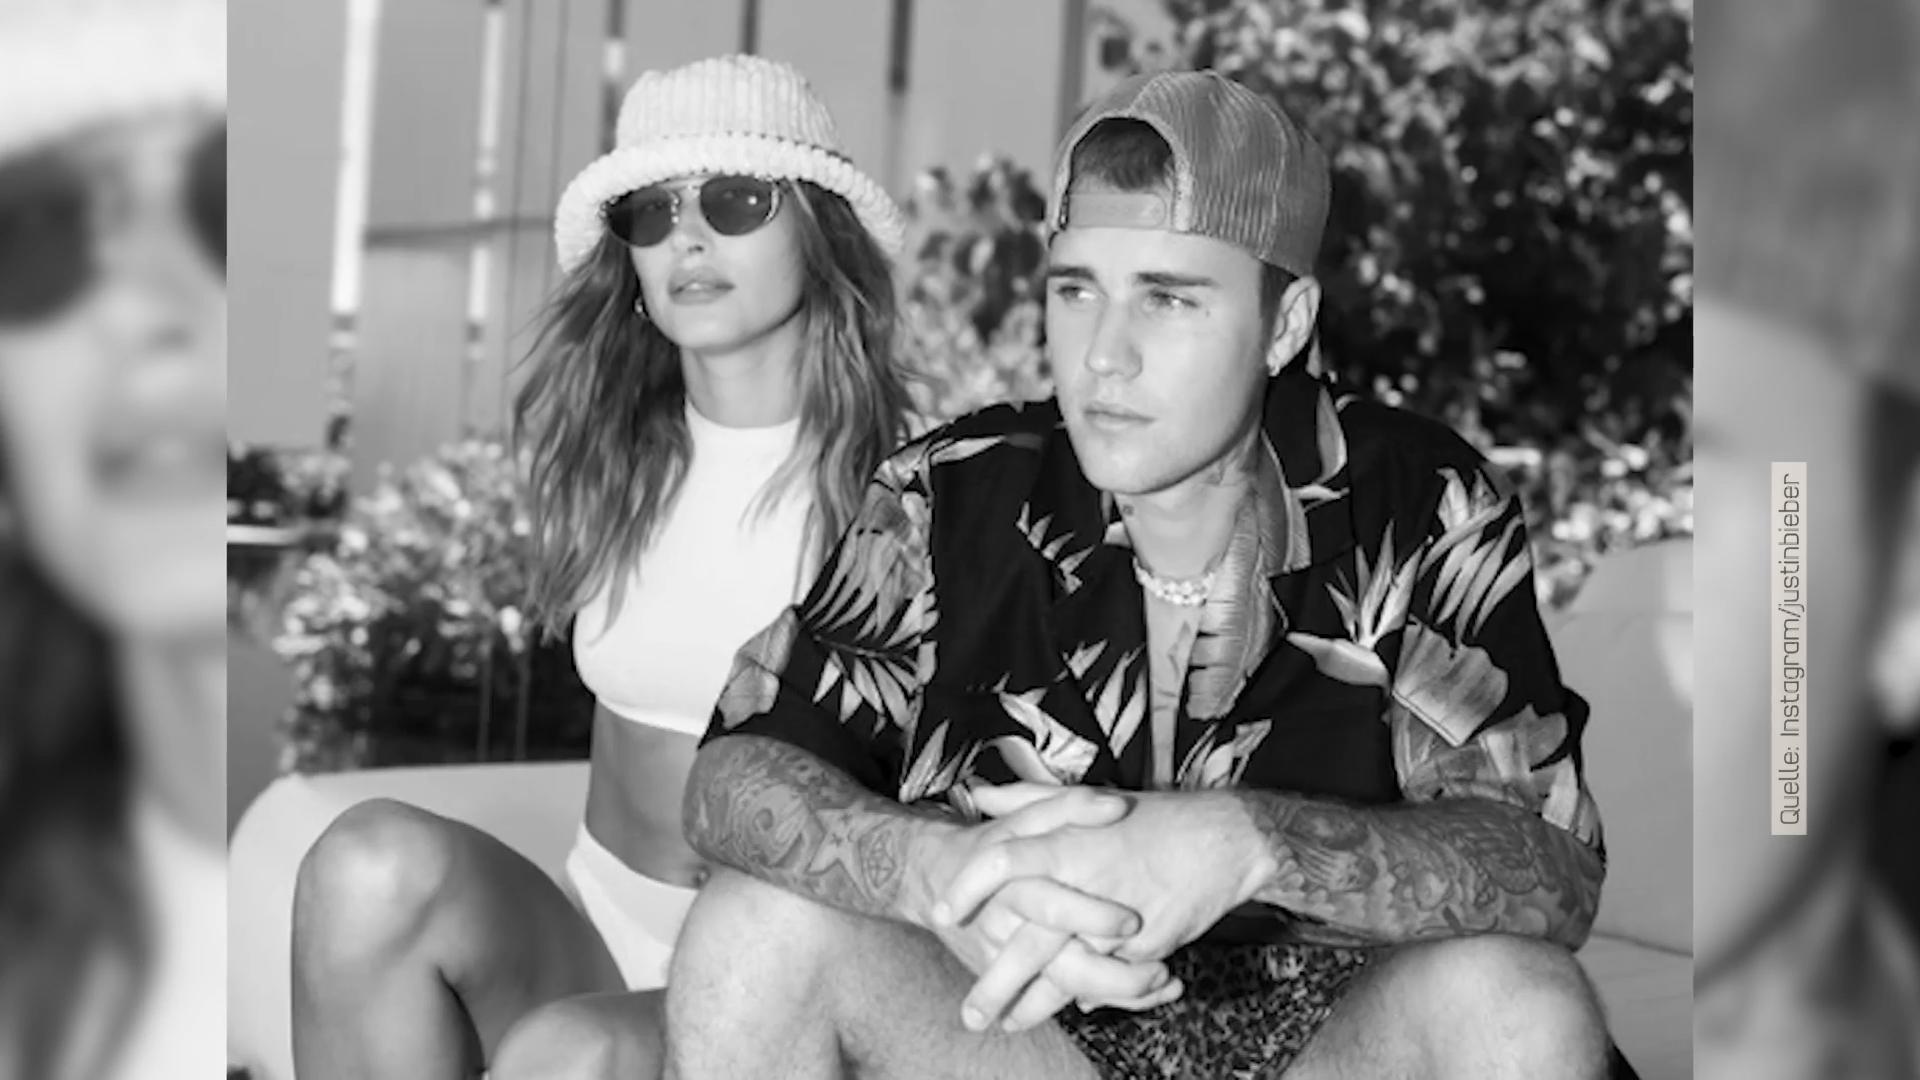 Erwarten Justin und Hailey Bieber ihr erstes Kind? Instagram-Post wirft Fragen auf